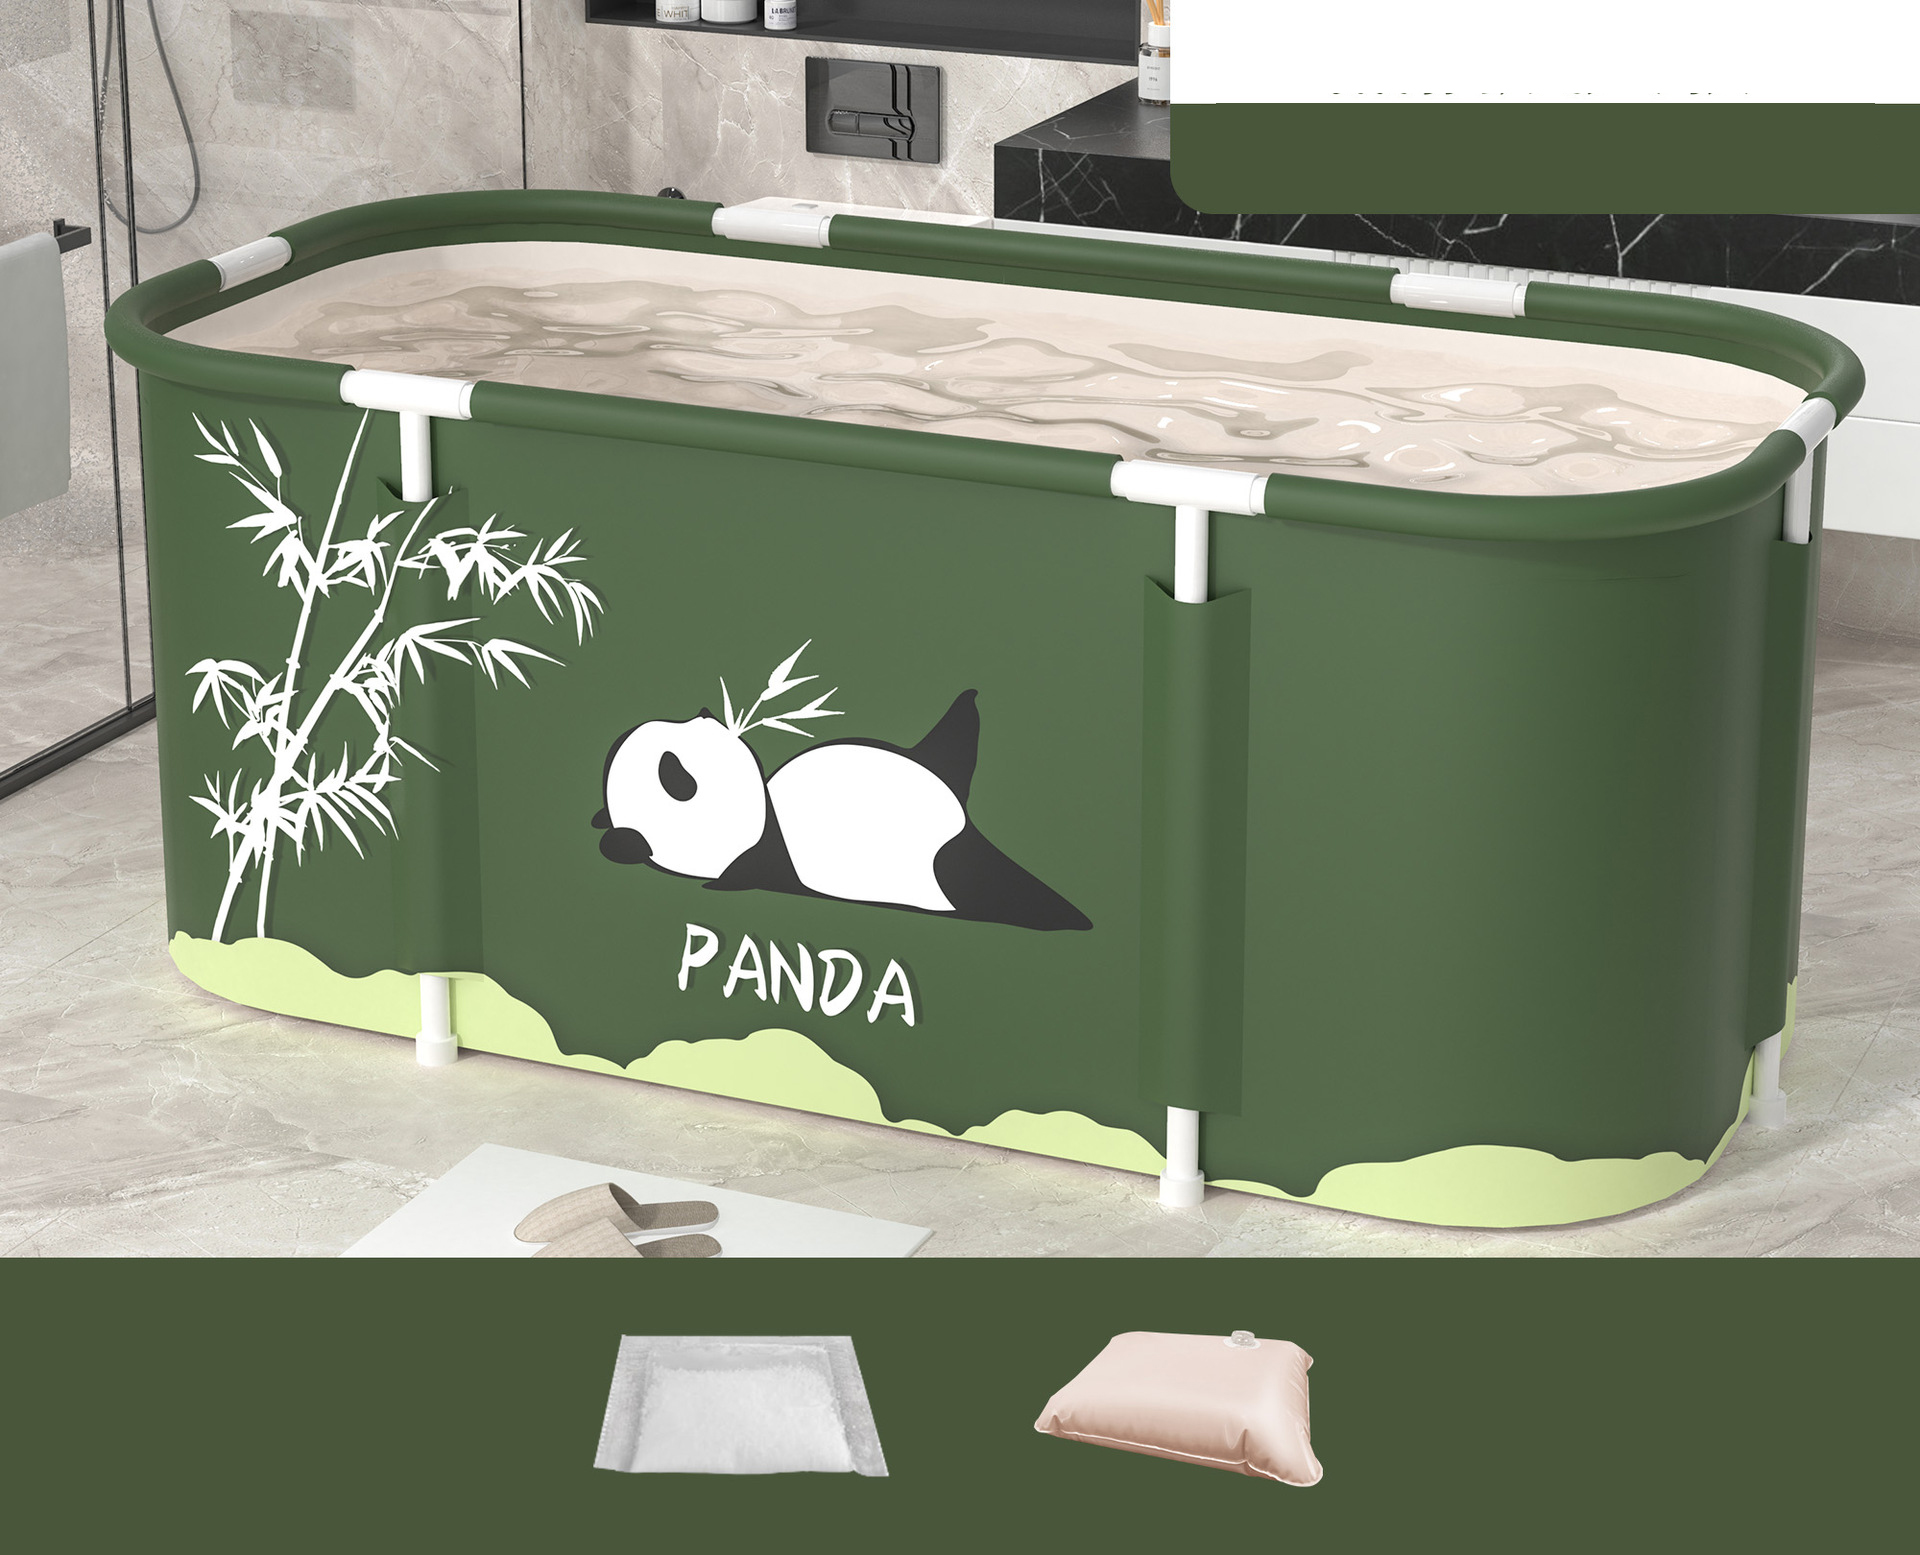 Panda Standard: Bath salt water injection cushion drain pipe